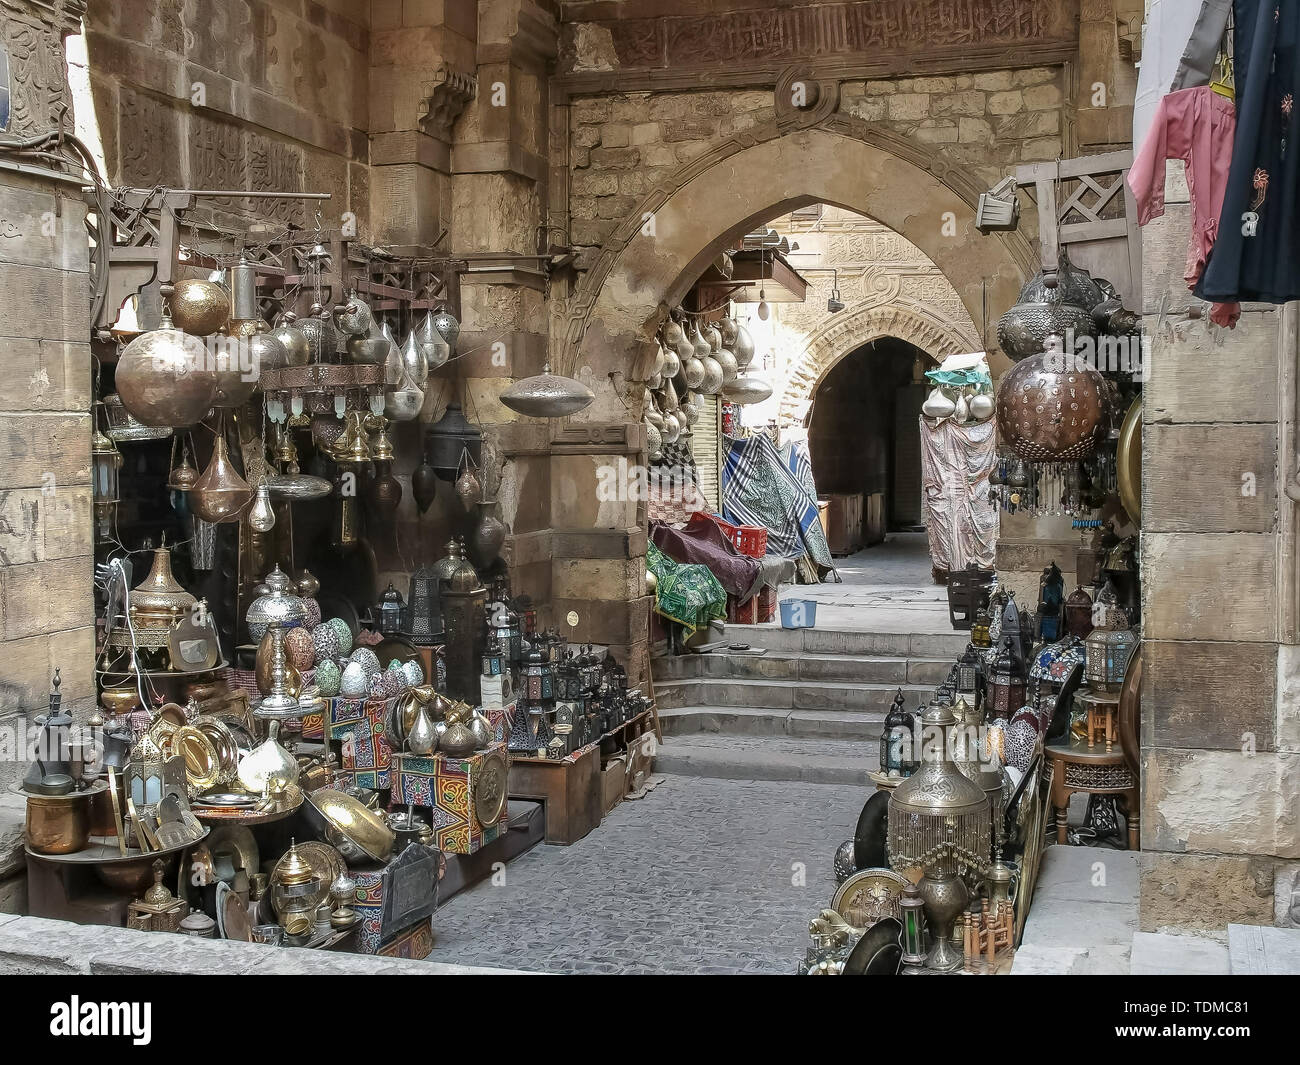 khan el khalili market in cairo, egypt Stock Photo